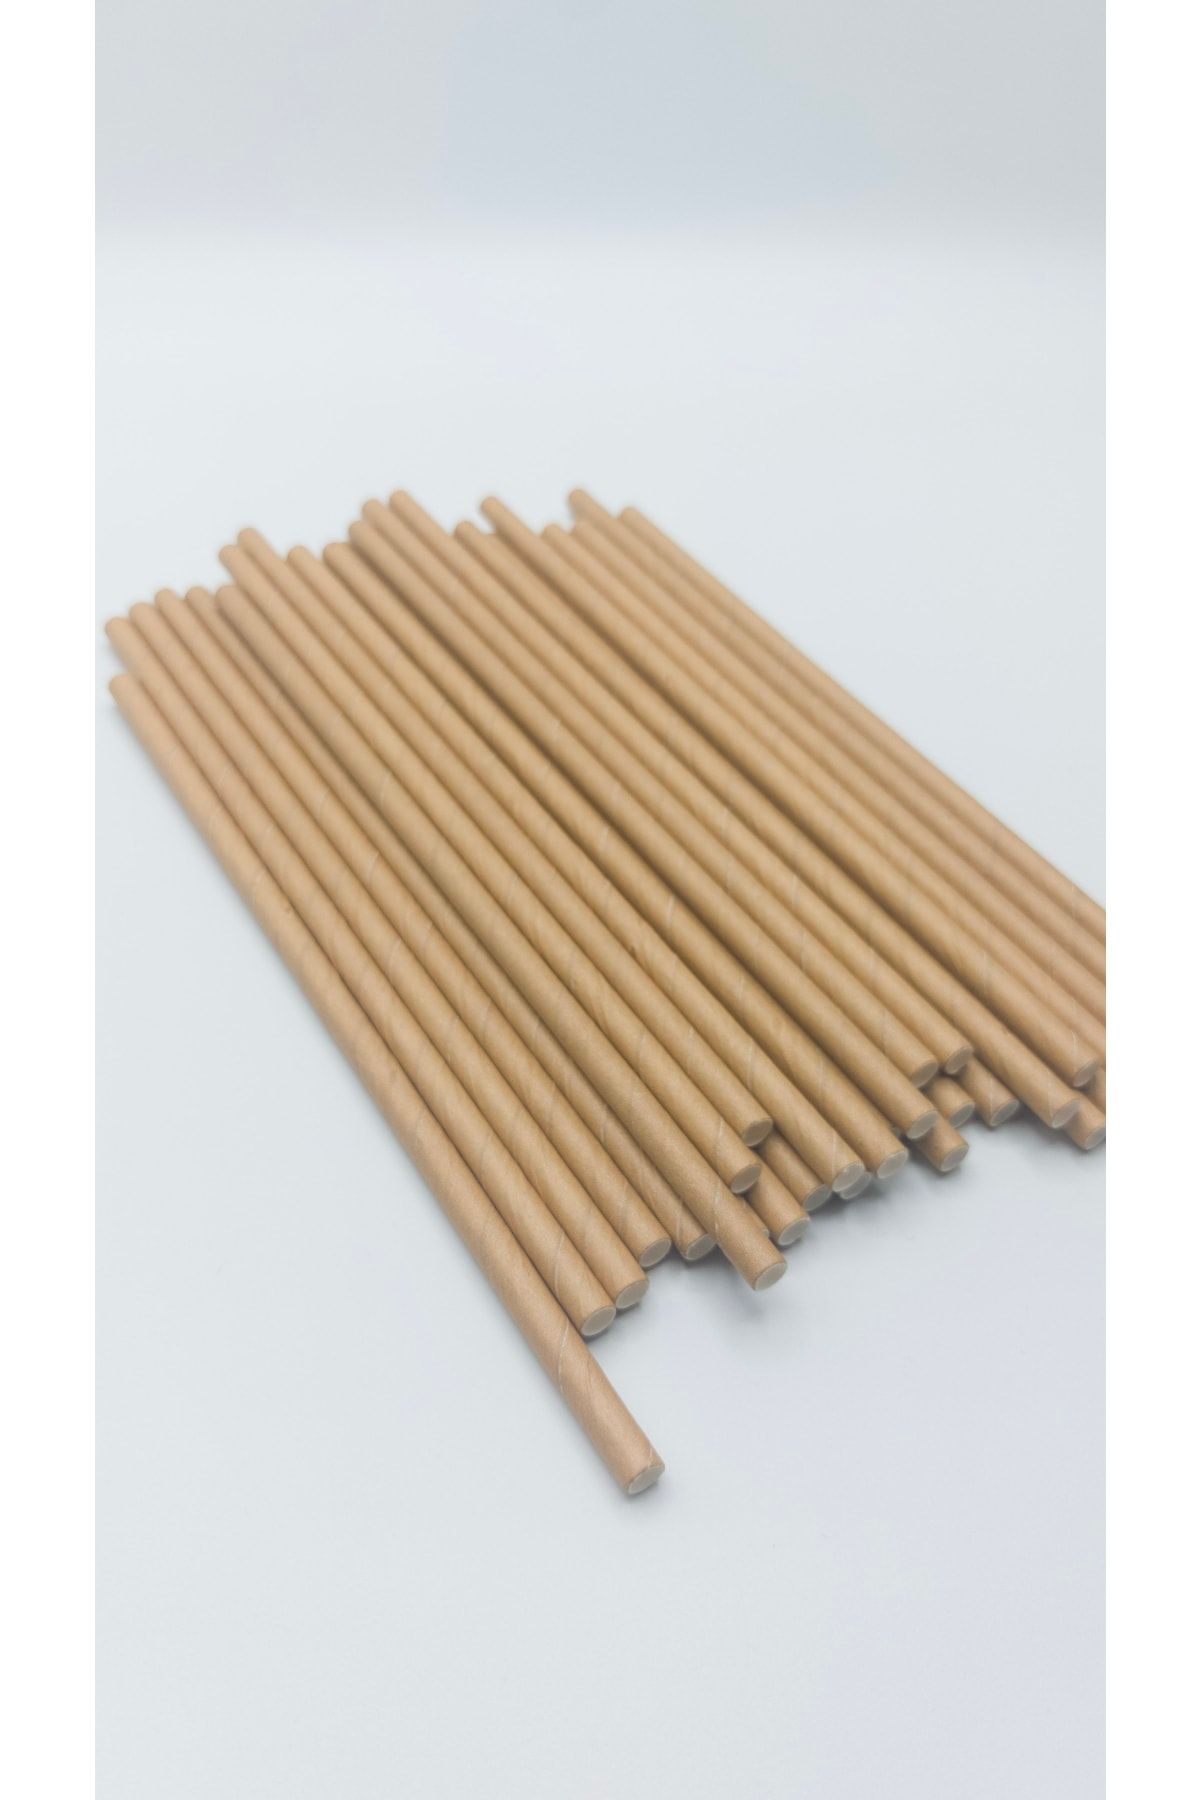 Pars Kağıt Pipet Kraft 100 Adet 8 Mm *20 Cm- Doğayla Dost Geri Dönüştürülebilir Kağıt Pipet Kalın Pipet